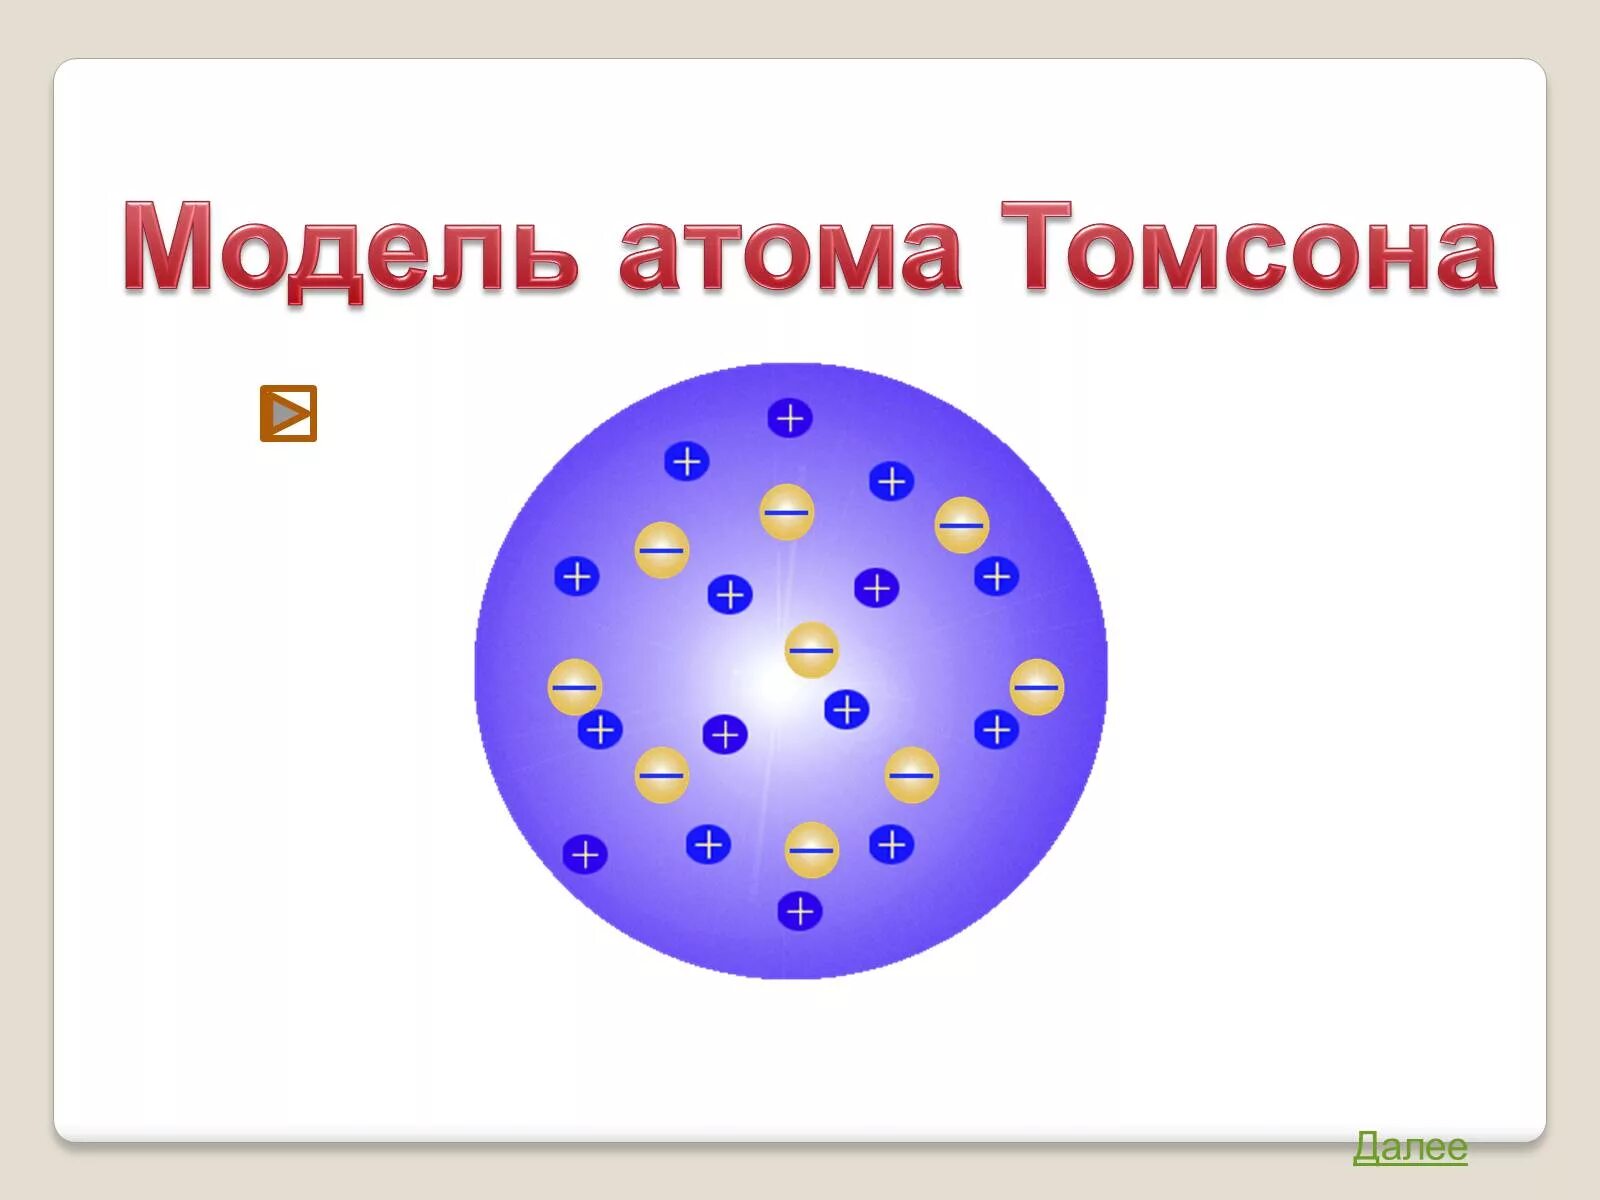 Строение атома по томсону. Модели строения атома физика Томпсон. Модель Томсона строение атома. Опыт Томпсона модель атома. Модель атома Томсона физика.